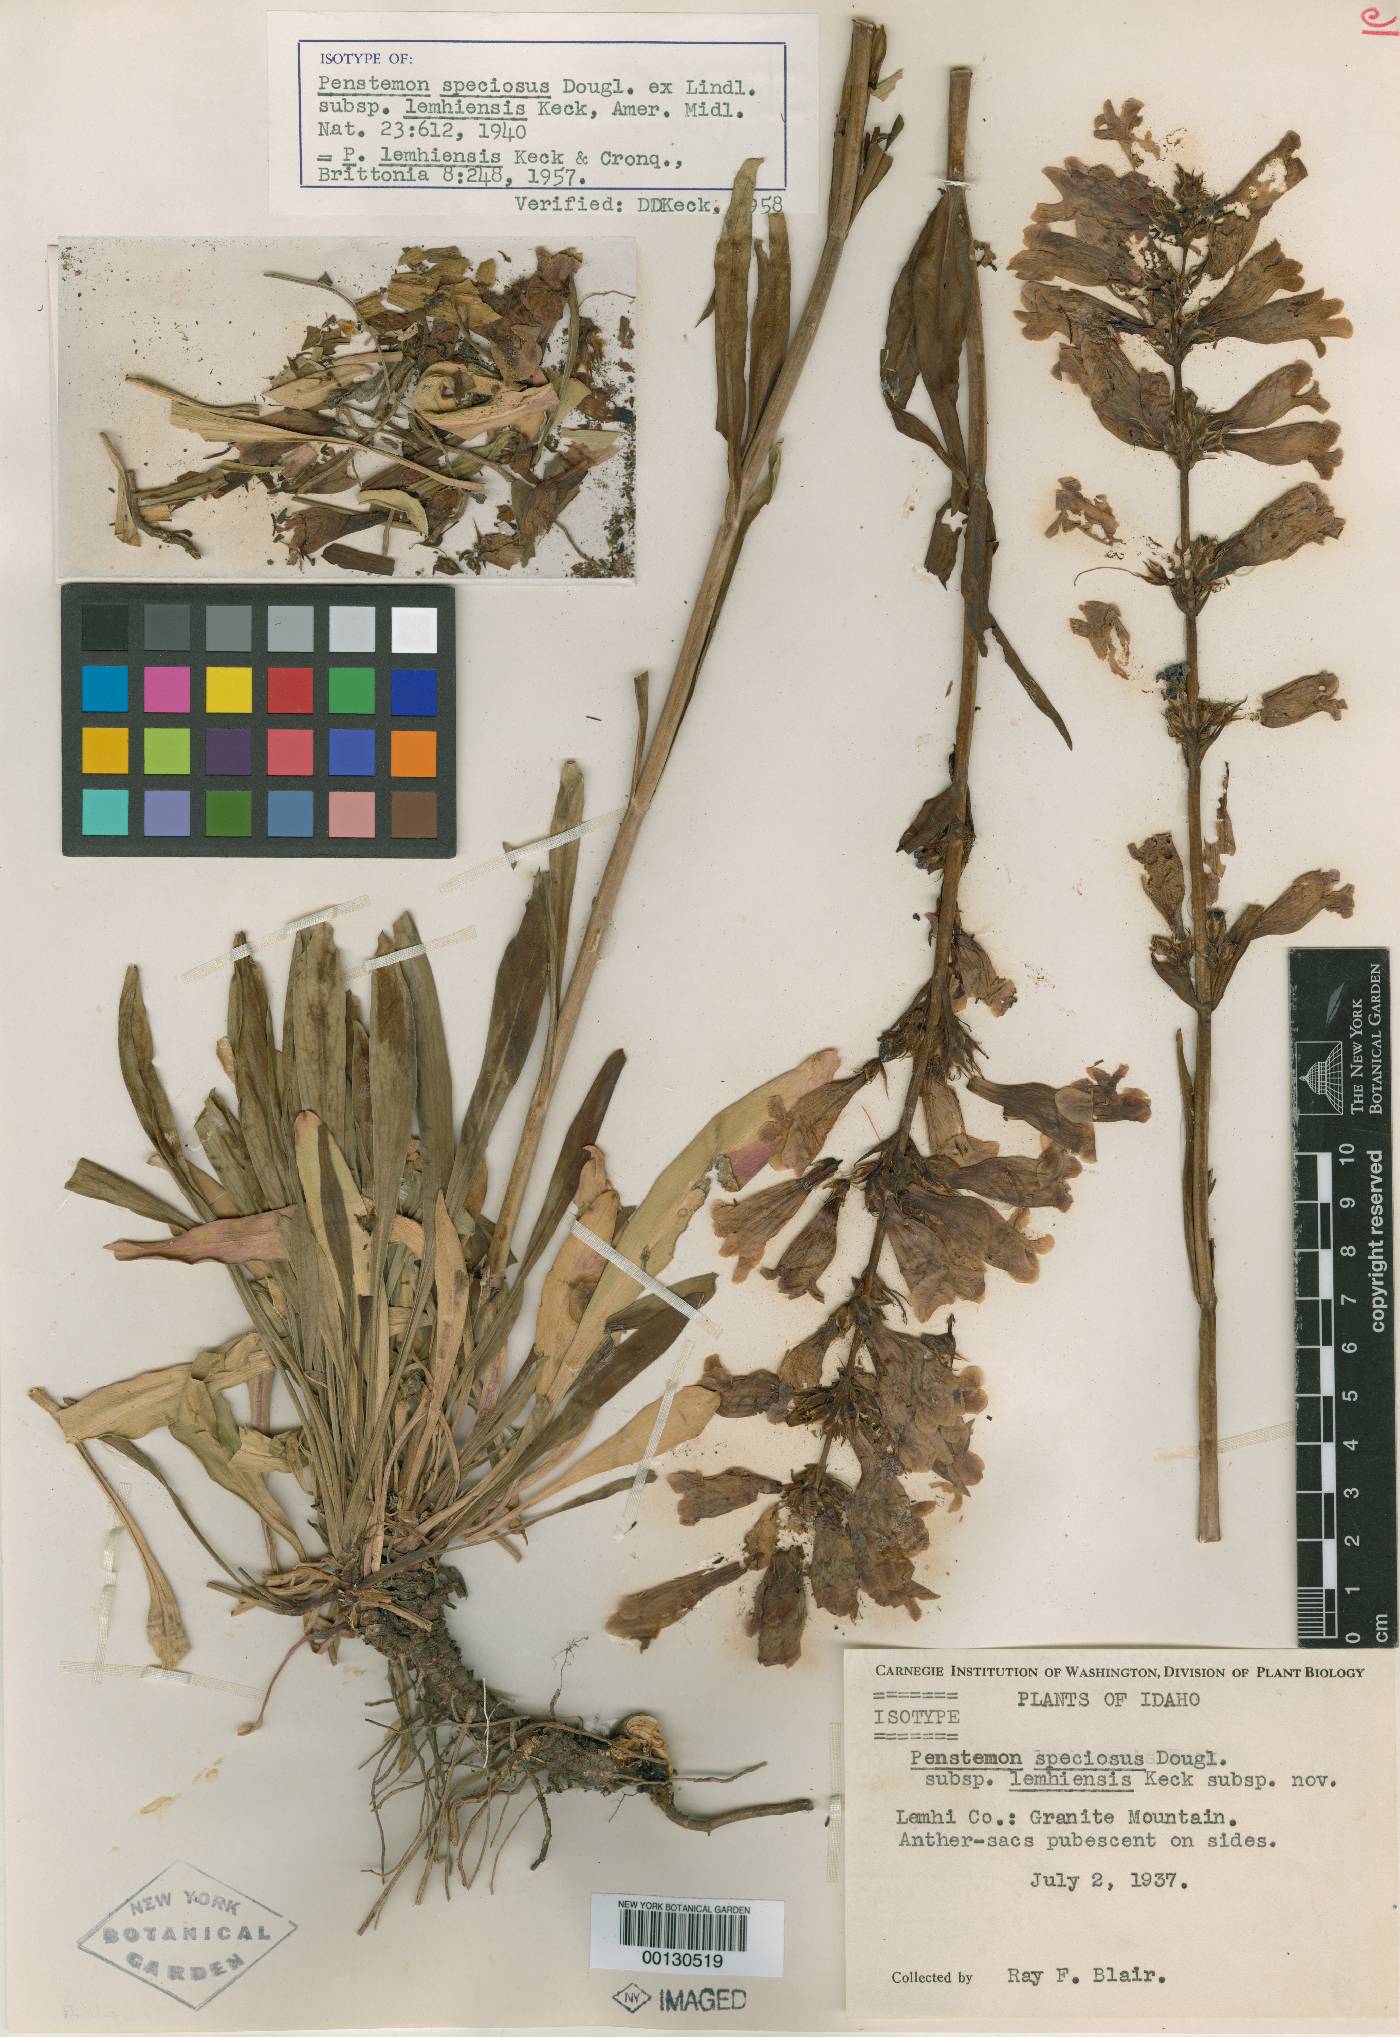 Penstemon speciosus subsp. lemhiensis image